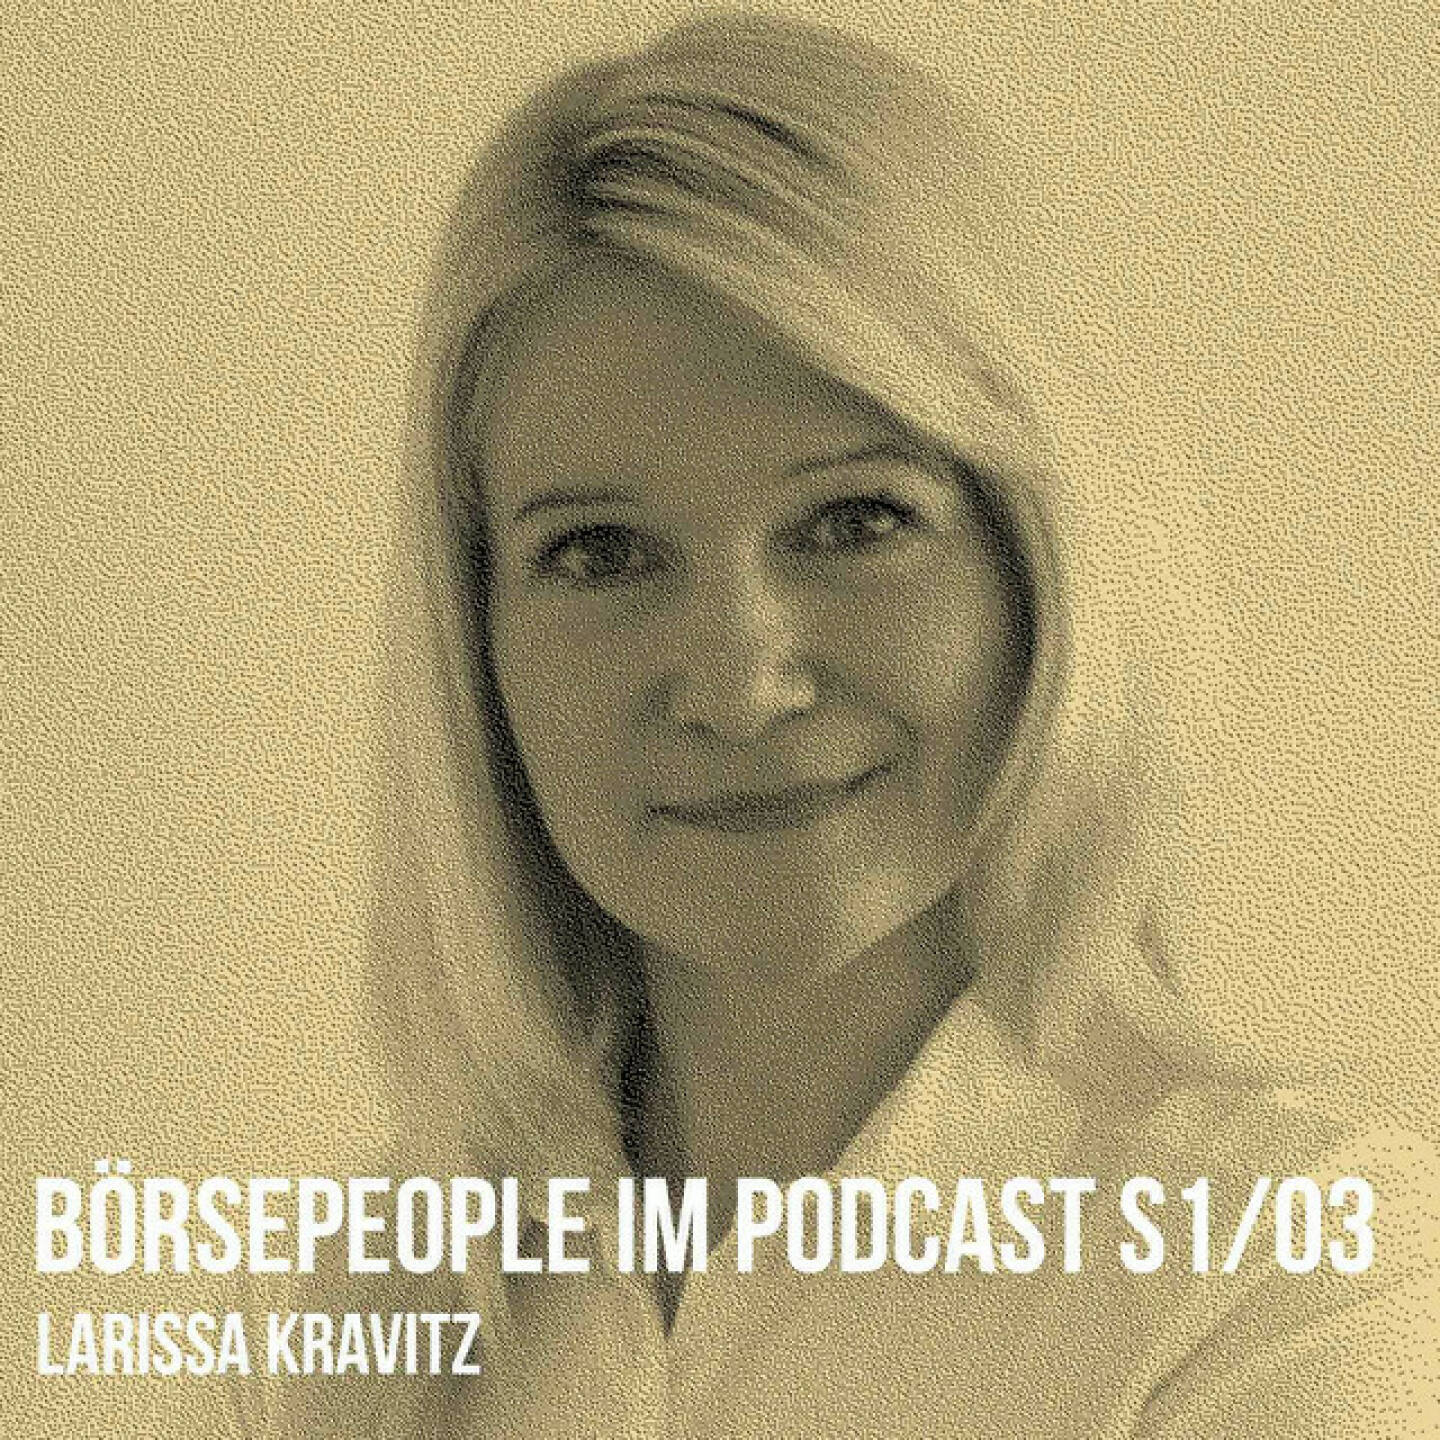 https://open.spotify.com/episode/4IqNq6ILnTqilDC5dQETUH
Börsepeople im Podcast S1/03: Larissa Kravitz - <p>Larissa Kravitz ist der 3. Börsepeople-Gast in unserer Season 1. Larissa ist die „Investorella“ und die Tochter von Mike Lielacher, Gast in Folge 2. Sie beschäftigt sich seit 20 Jahren mit den Märkten, ist Finanzmathematikerin, ehemalige Aktienhändlerin, Strategieentwicklerin, Treasury-Managerin und Aufsichtsrätin und besitzt ein Vermögensberatungs- nternehmen. Ihre Mission ist es u.a., die finanzielle Autonomie von Frauen und Familien durch Bildung zu stärken. Dies gelingt ihr durch Workshops und Online-Vorträge sowie durch ihren Investorella-Podcast und ihr Buch „Money, Honey!“. Im Werdegang-Plausch sprechen wir über ihre Anfänge, Strategien und viel Persönliches rund um die o.a. Themen. Larissa, die ich kenne, seit sie ein Kind ist, ist in vielen Dingen ein Vorbild.</p><br/><p>Über Larissa und Links zum Podcast: <a href=https://investorella.at rel=nofollow>https://investorella.at</a><br/>Die Folge mit ihrem Vater Mike Lielacher: <a href=https://boersenradio.at/page/podcast/3132/ rel=nofollow>https://boersenradio.at/page/podcast/3132/</a> </p><br/><p>About: Die Serie Börsepeople findet m Rahmen von http://www.christian-drastil.com/podcast statt. Es handelt sich dabei um typische Personality- und Werdegang-Gespräche. Die Season 1 umfasst unter dem Motto „22 Börsepeople in Summer 22“ eben 22 Podcast-Talks, divers zusammengesetzt. Presenter ist die Management Factory (<a href=https://www.mf.ag rel=nofollow>https://www.mf.ag</a> ).</p>